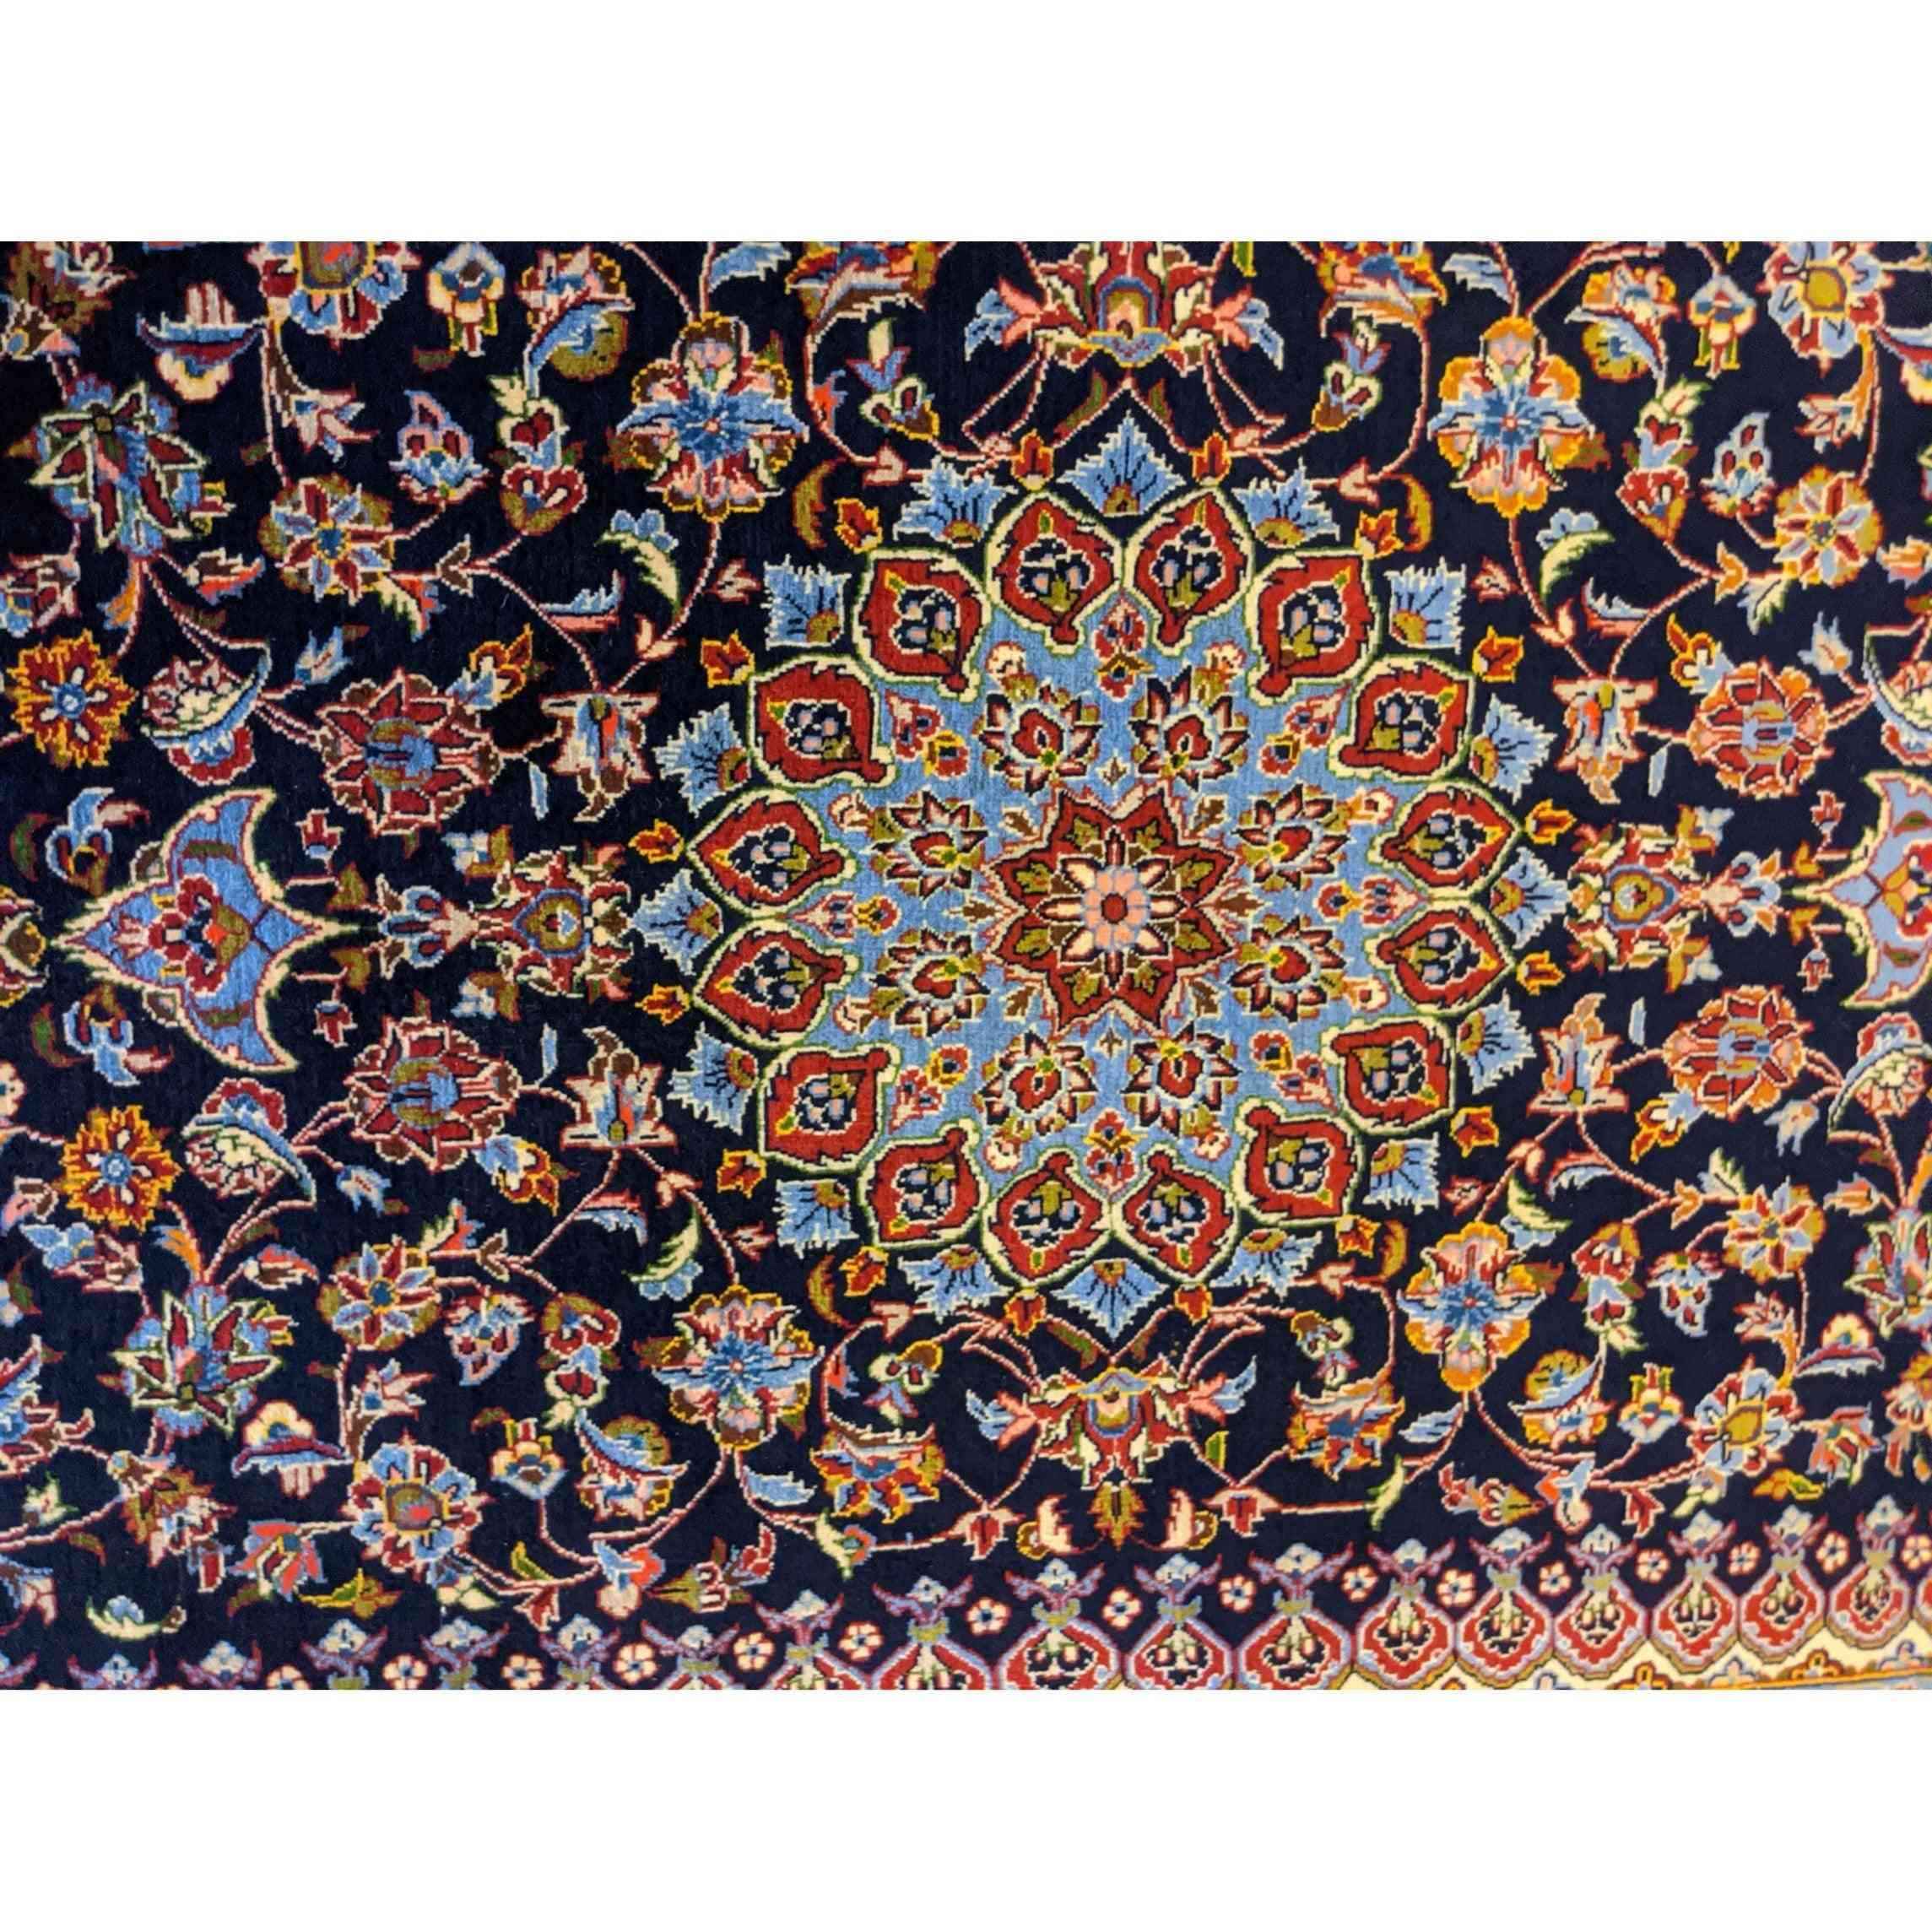 227 x 140 cm Fine Kashan Traditional Blue Rug - Rugmaster